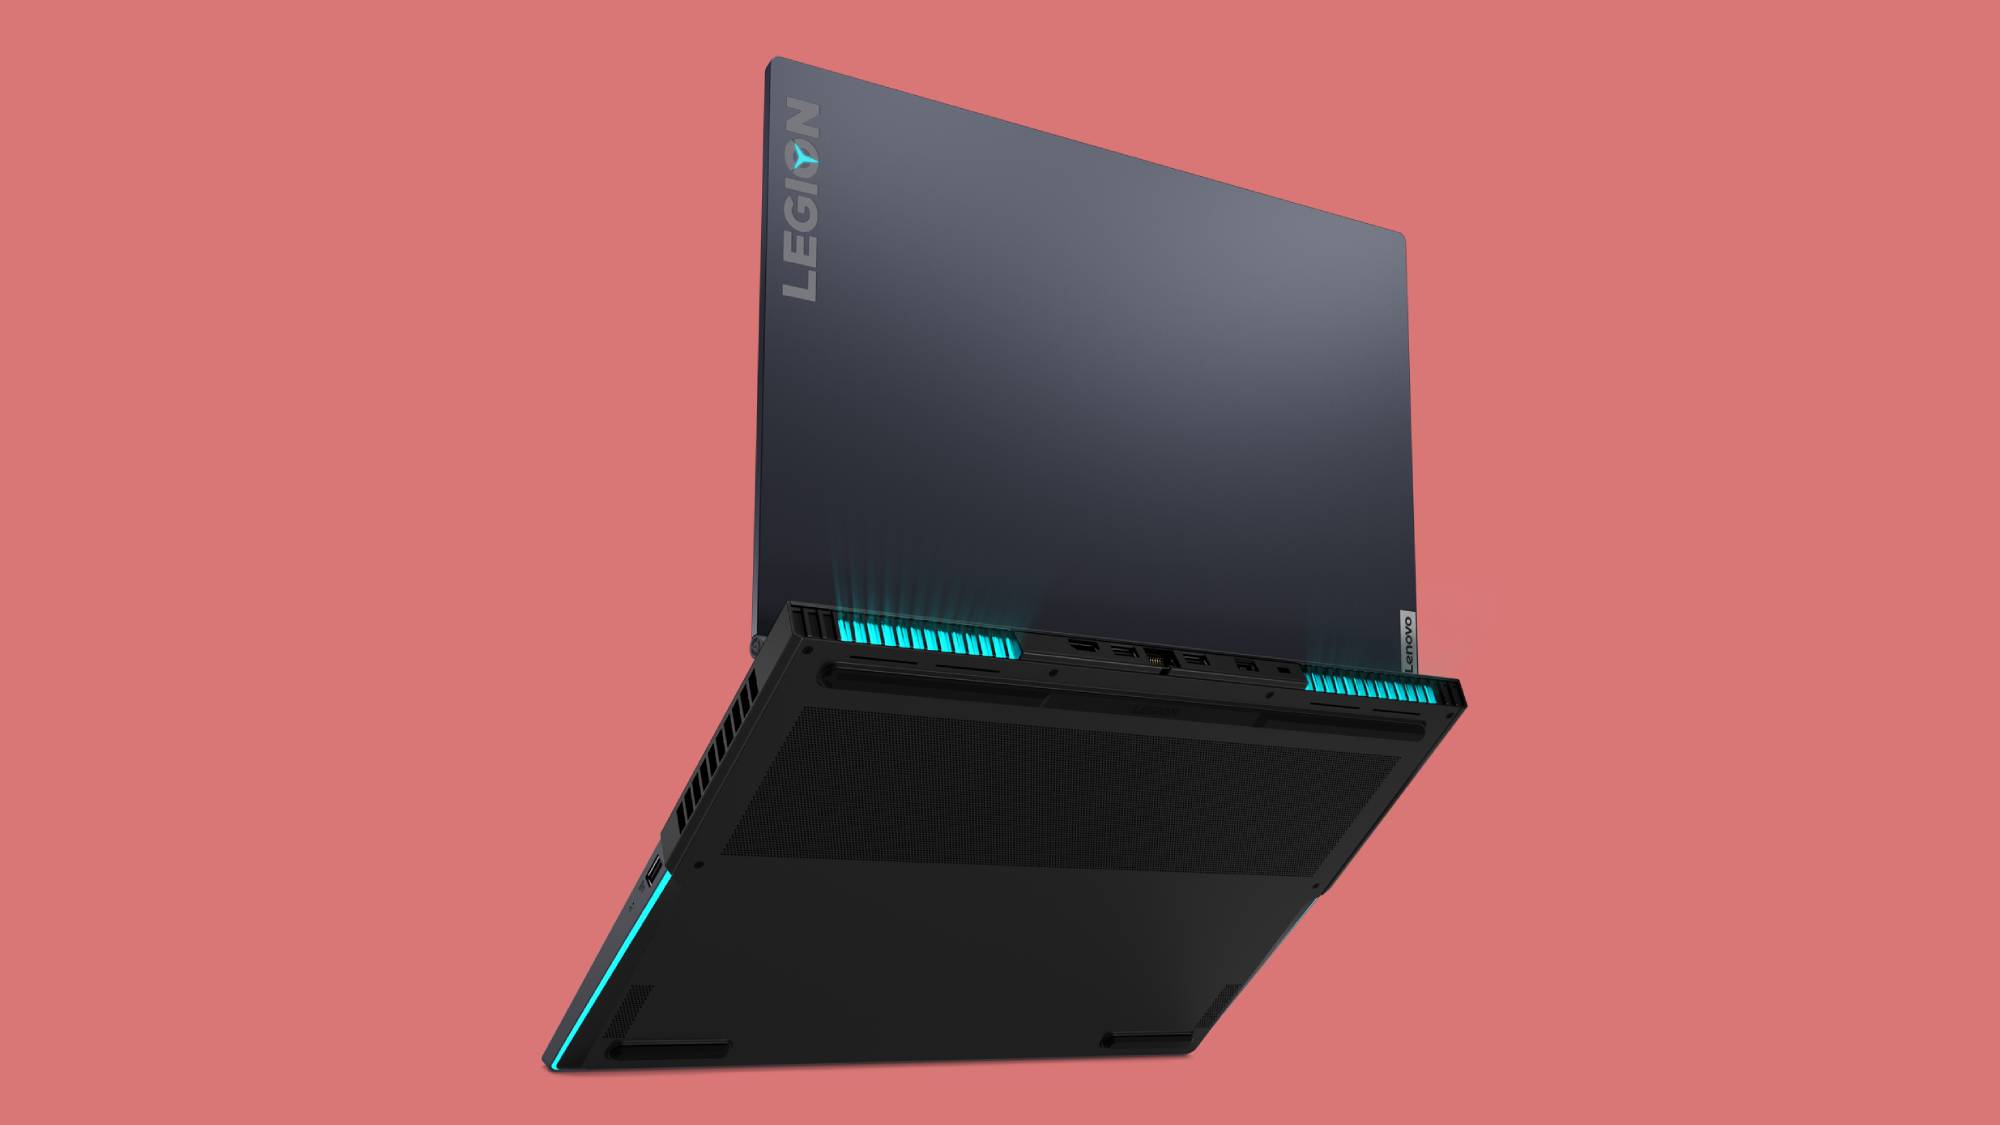 Røg killing Værdiløs Lenovo Legion 5i packs RTX 2060, 10th Gen CPU for $999 | Laptop Mag